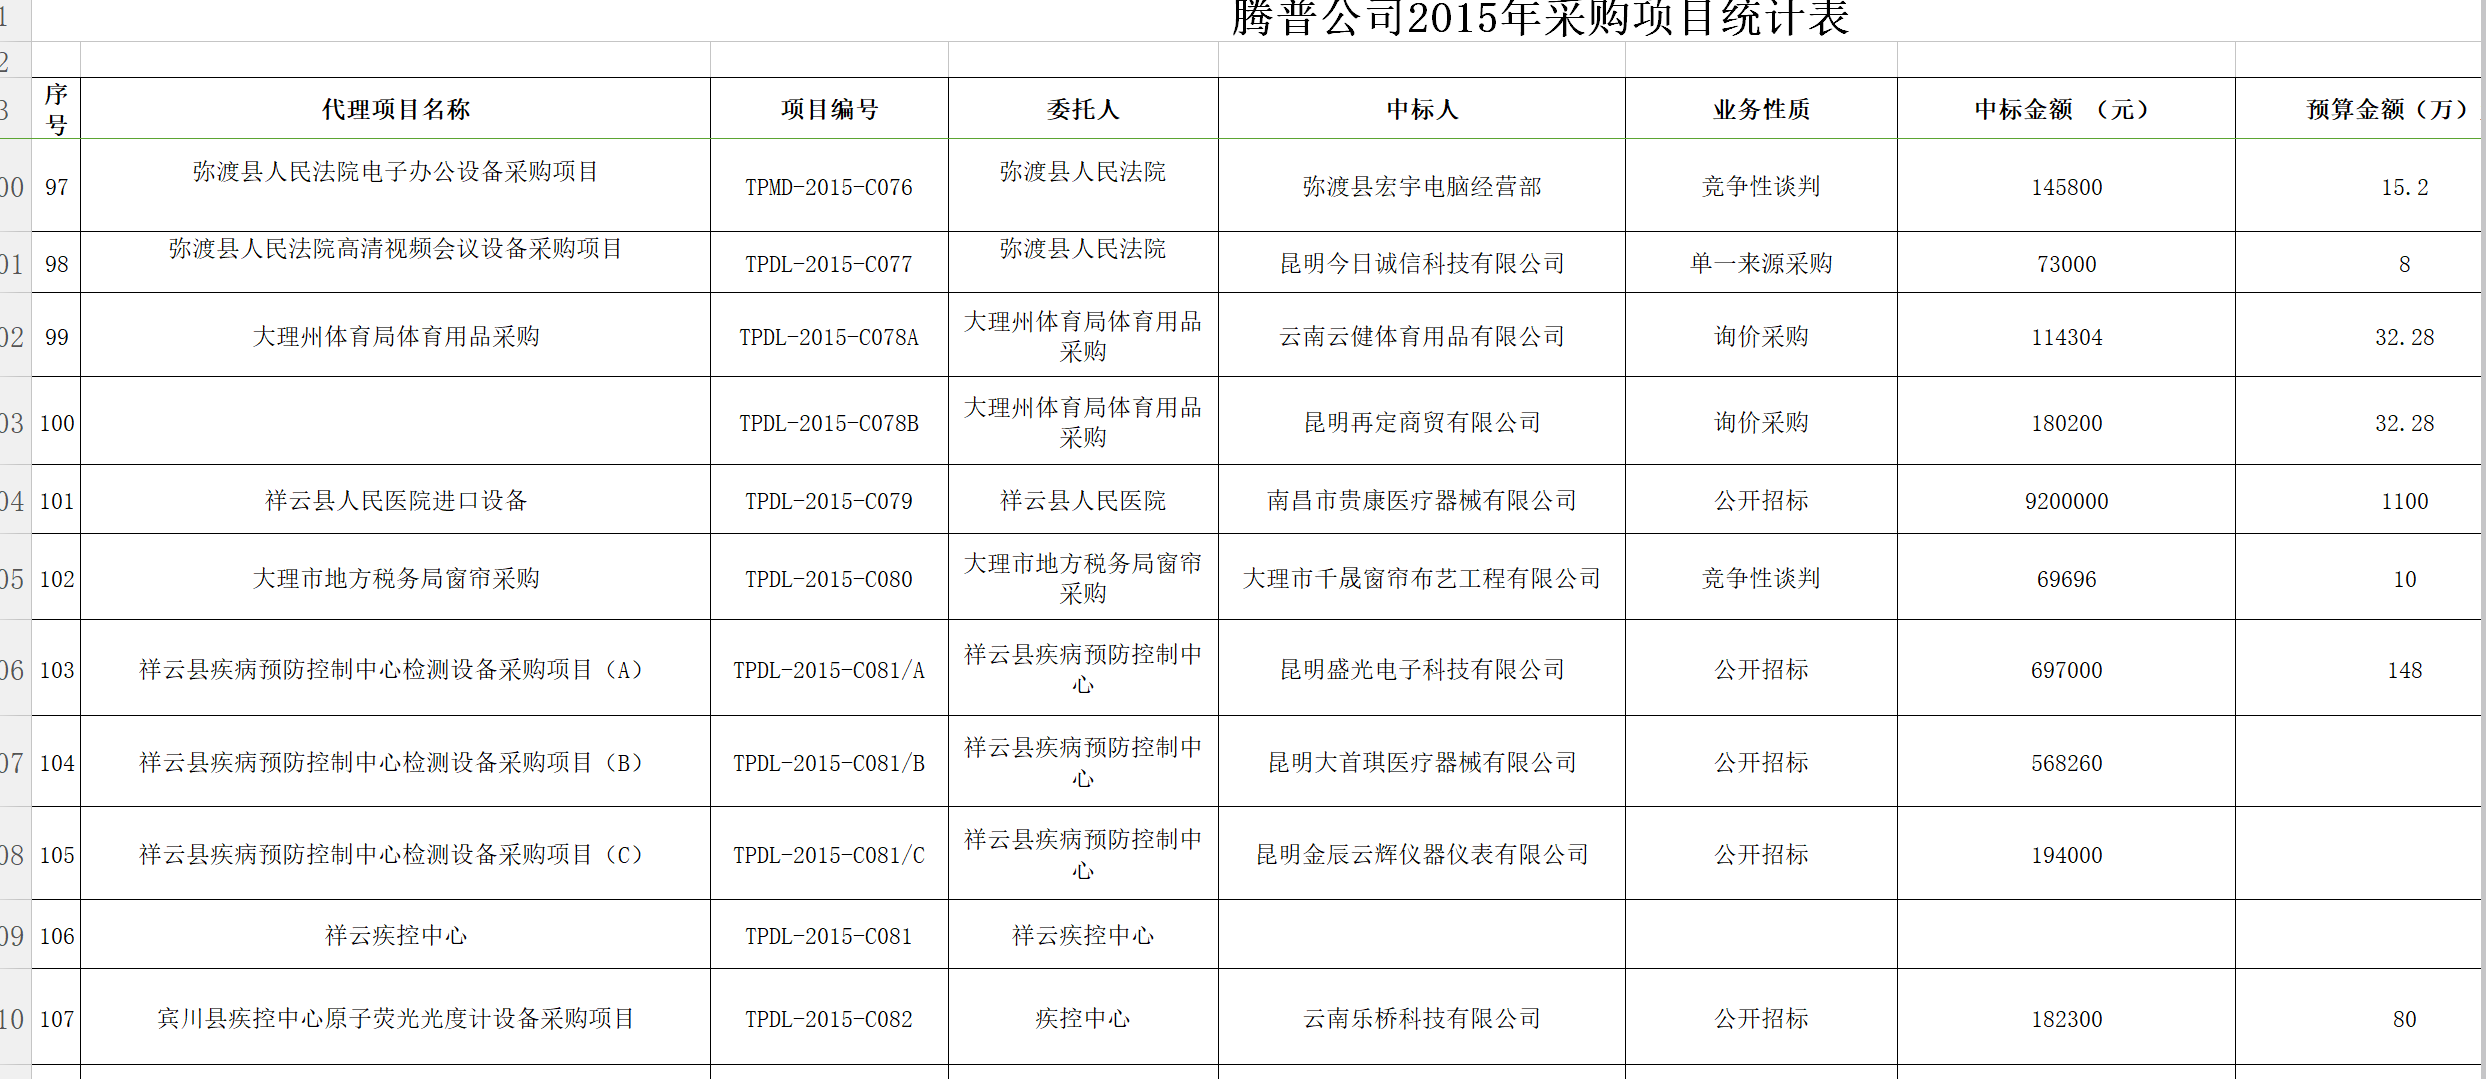 QQ截图腾普公司2015采购统计表10.png